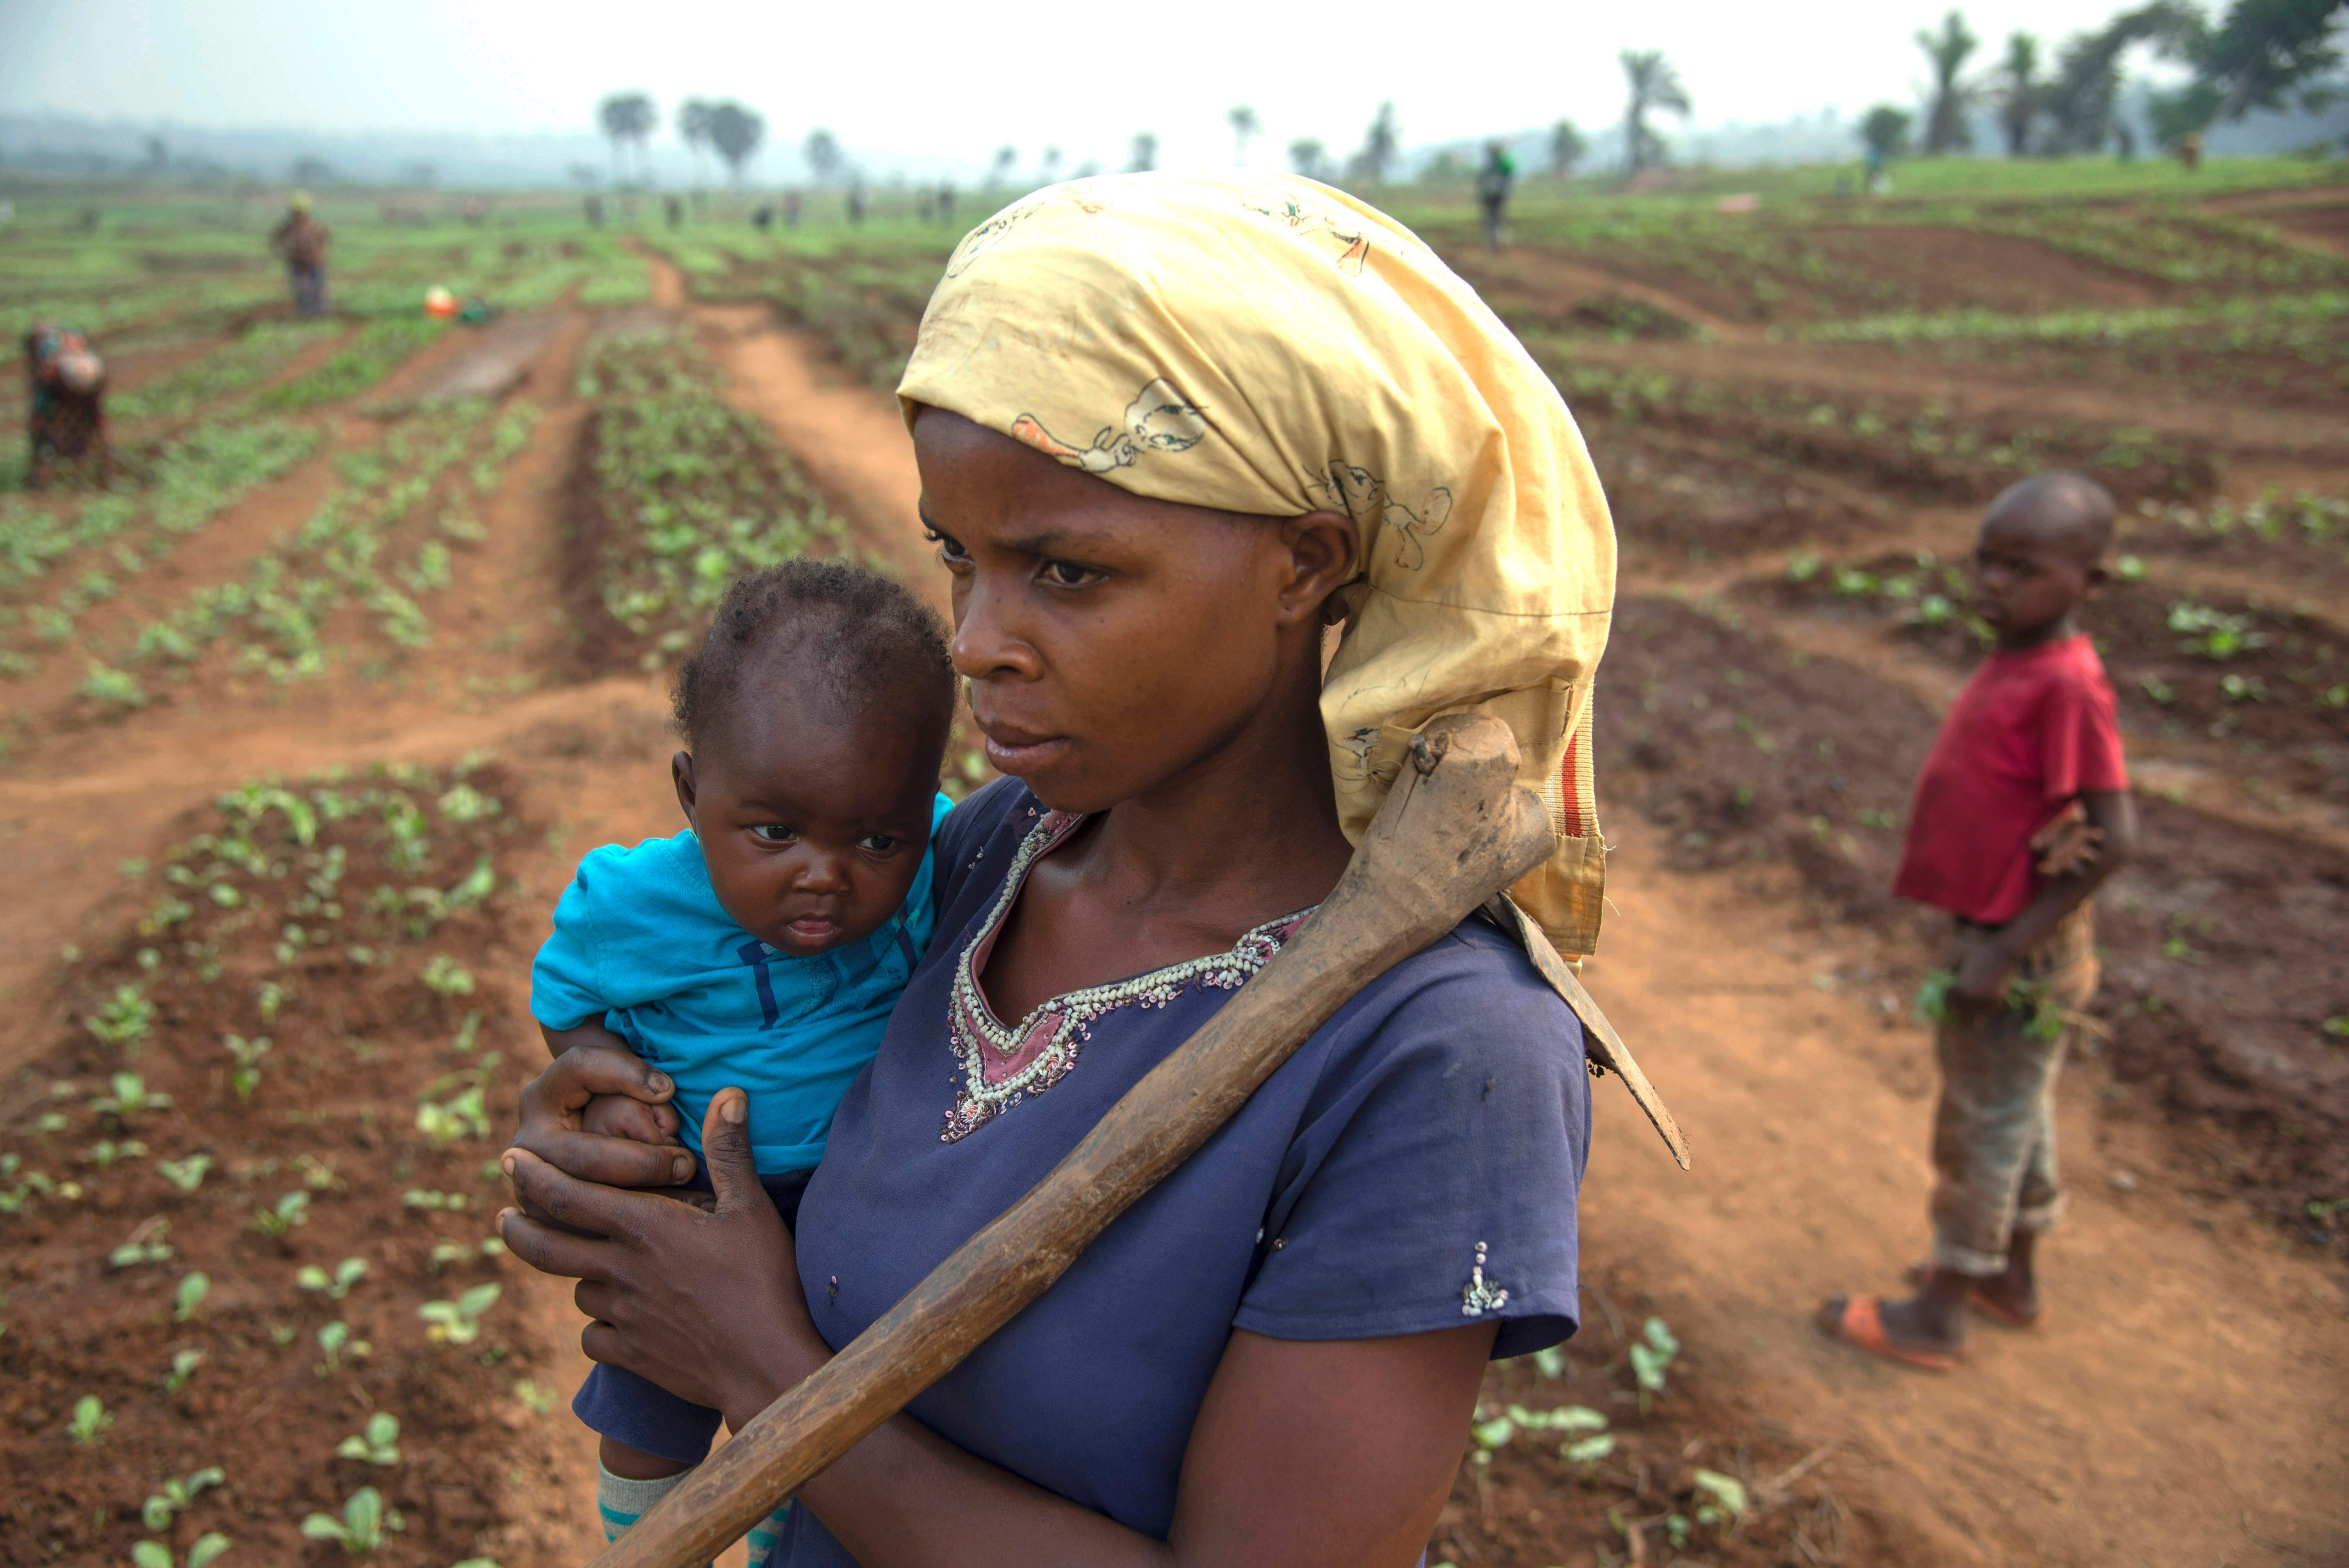 سيدة تحمل طفلها أثناء العمل فى الزراعة بالكونغو